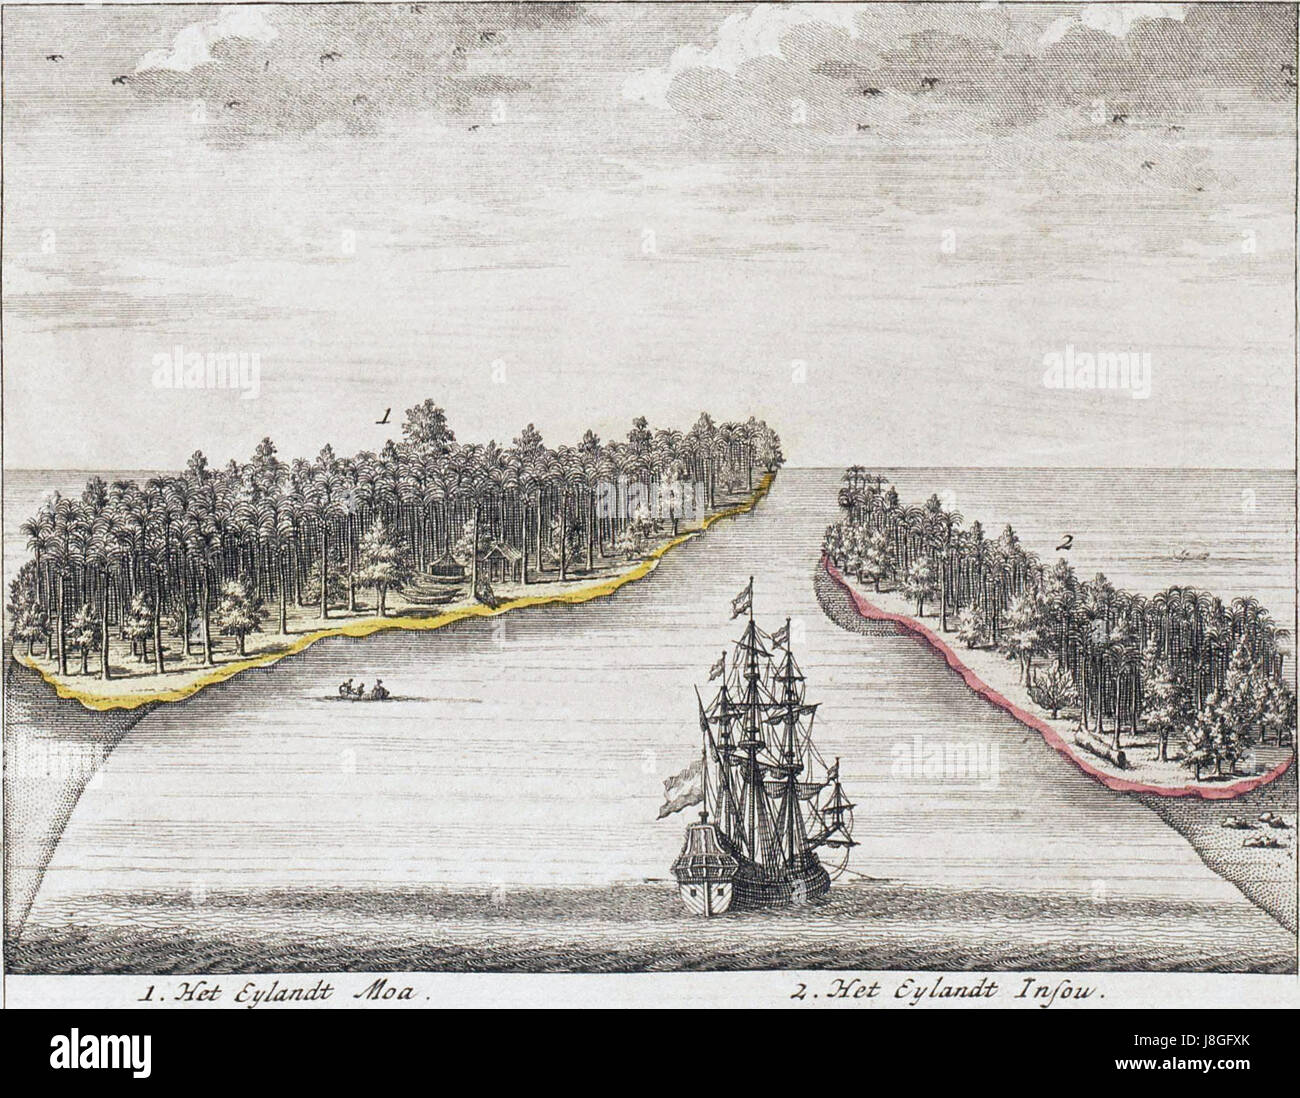 Het eiland Moa en Insou Nieuw Guinea after a print from 1726 Van Keulen Stock Photo